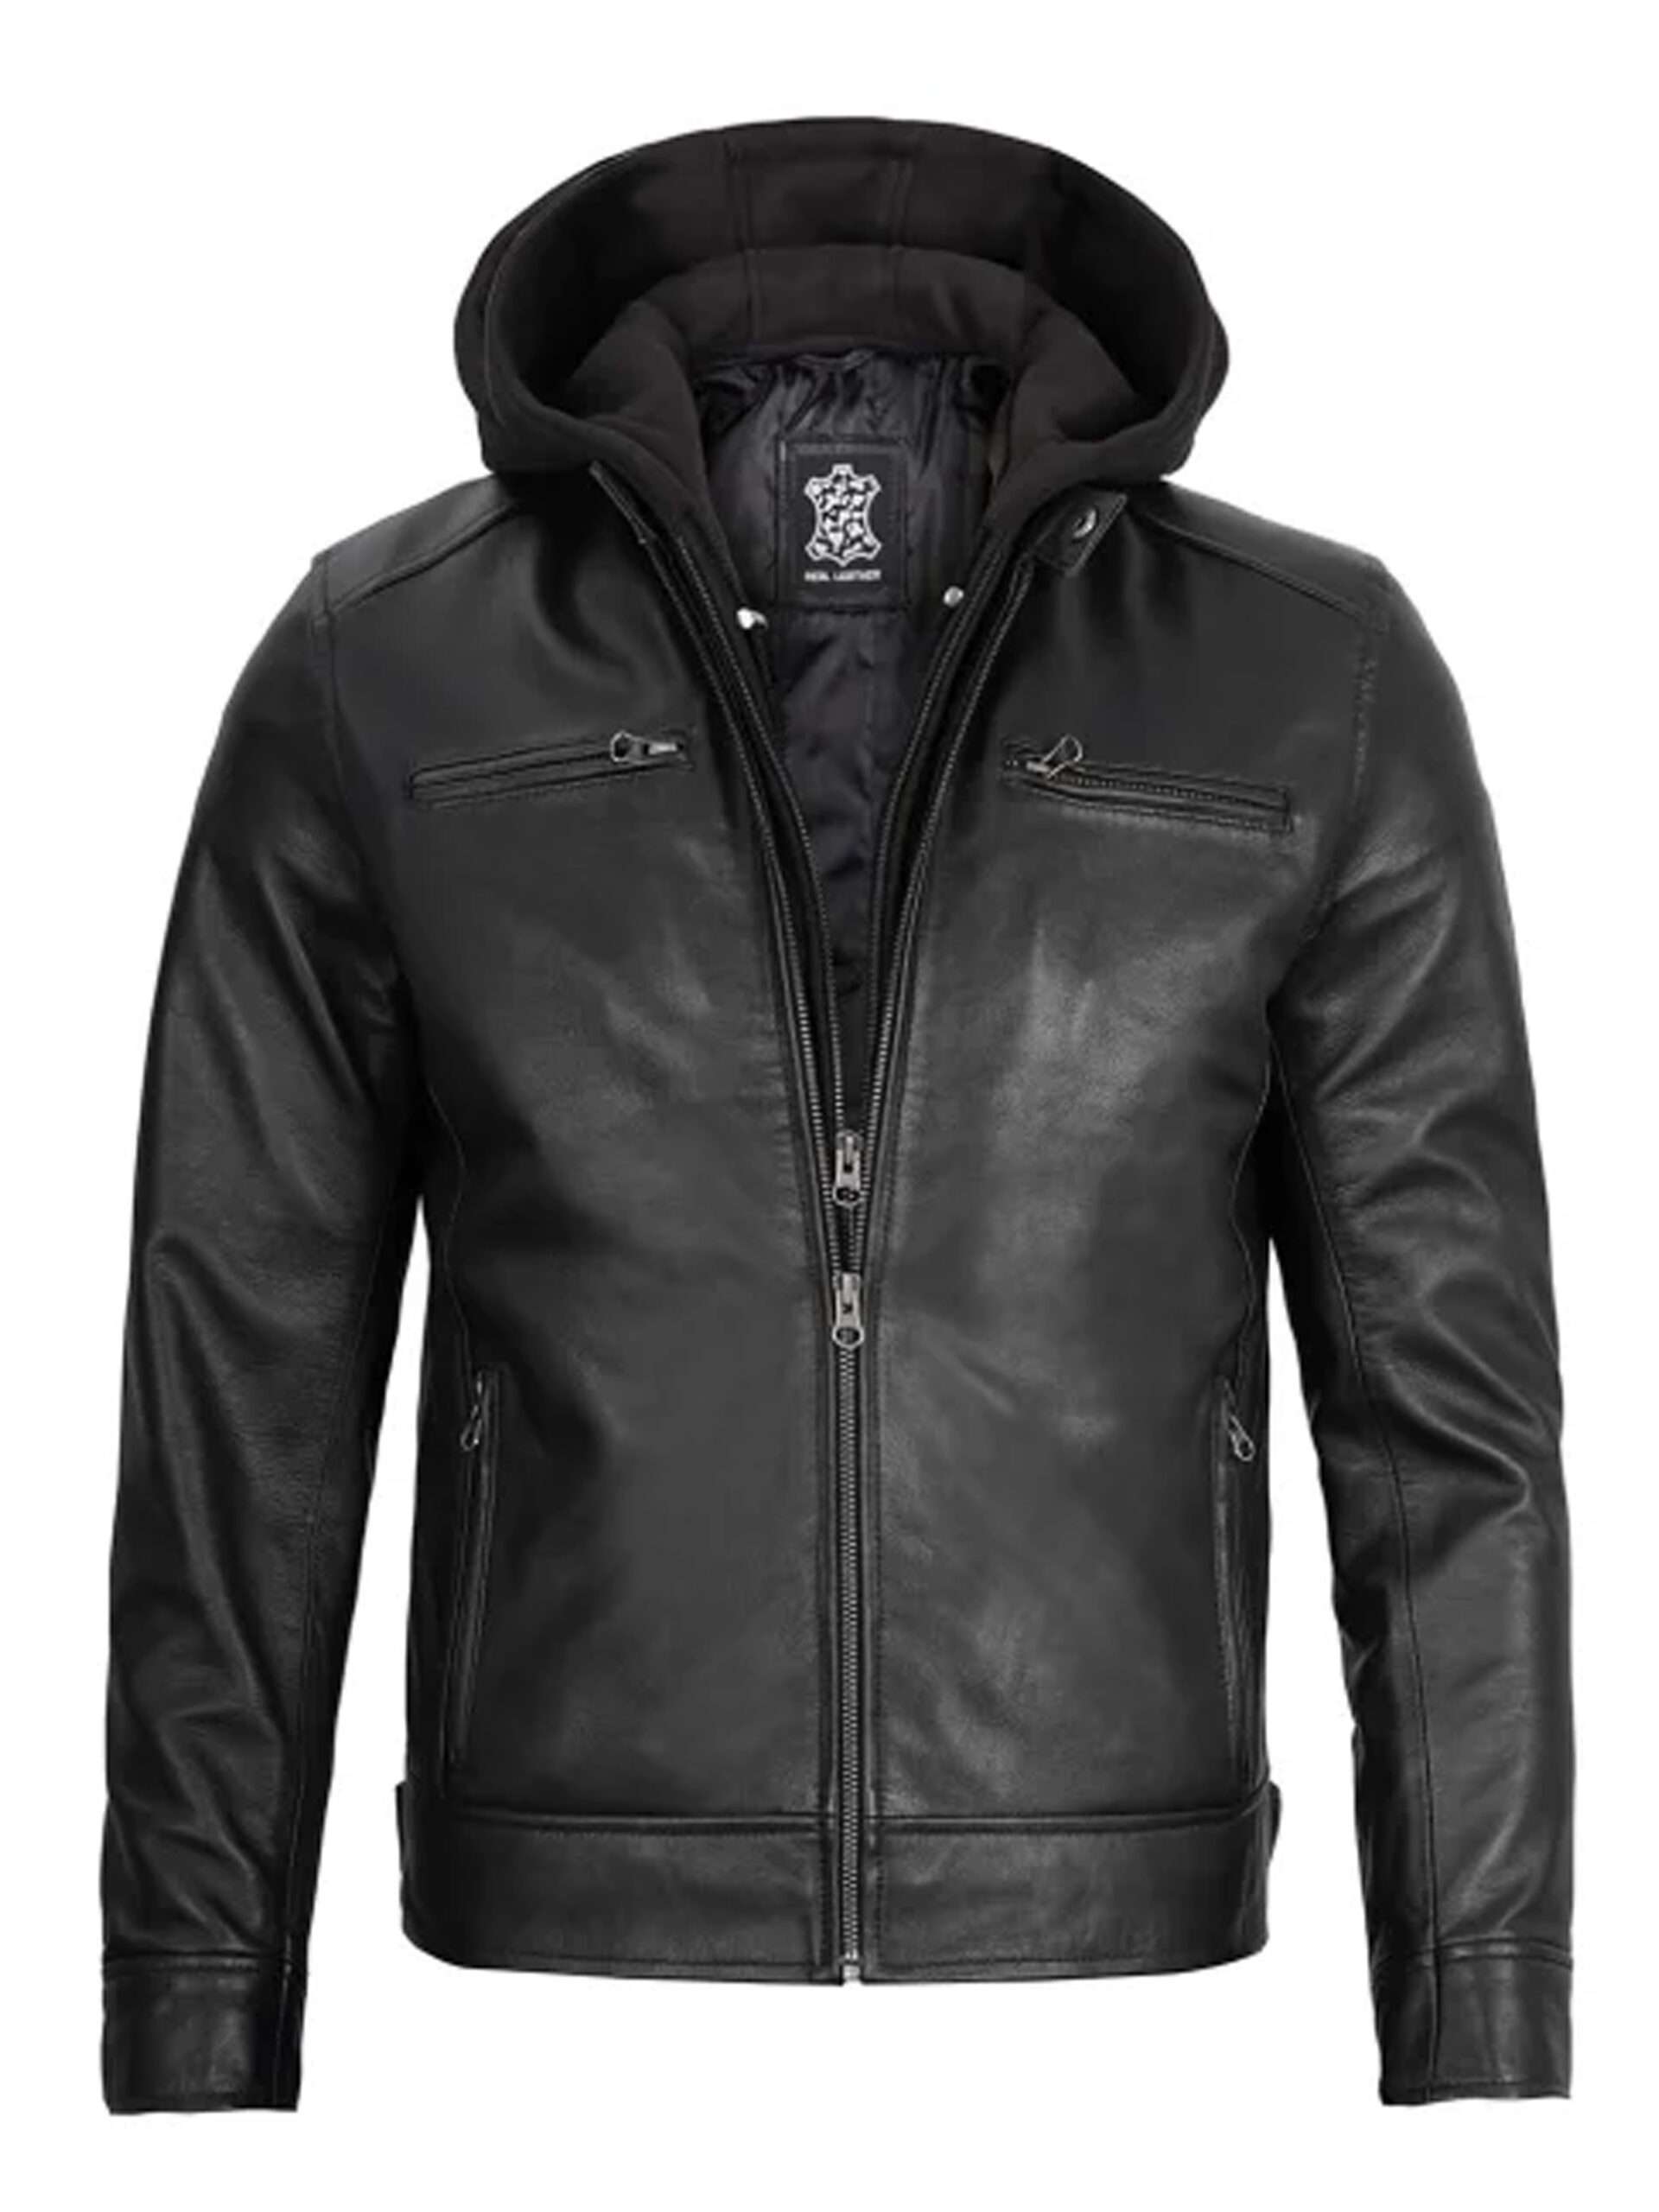 Men’s Cafe Racer Black Biker Leather Jacket With Removable Hood